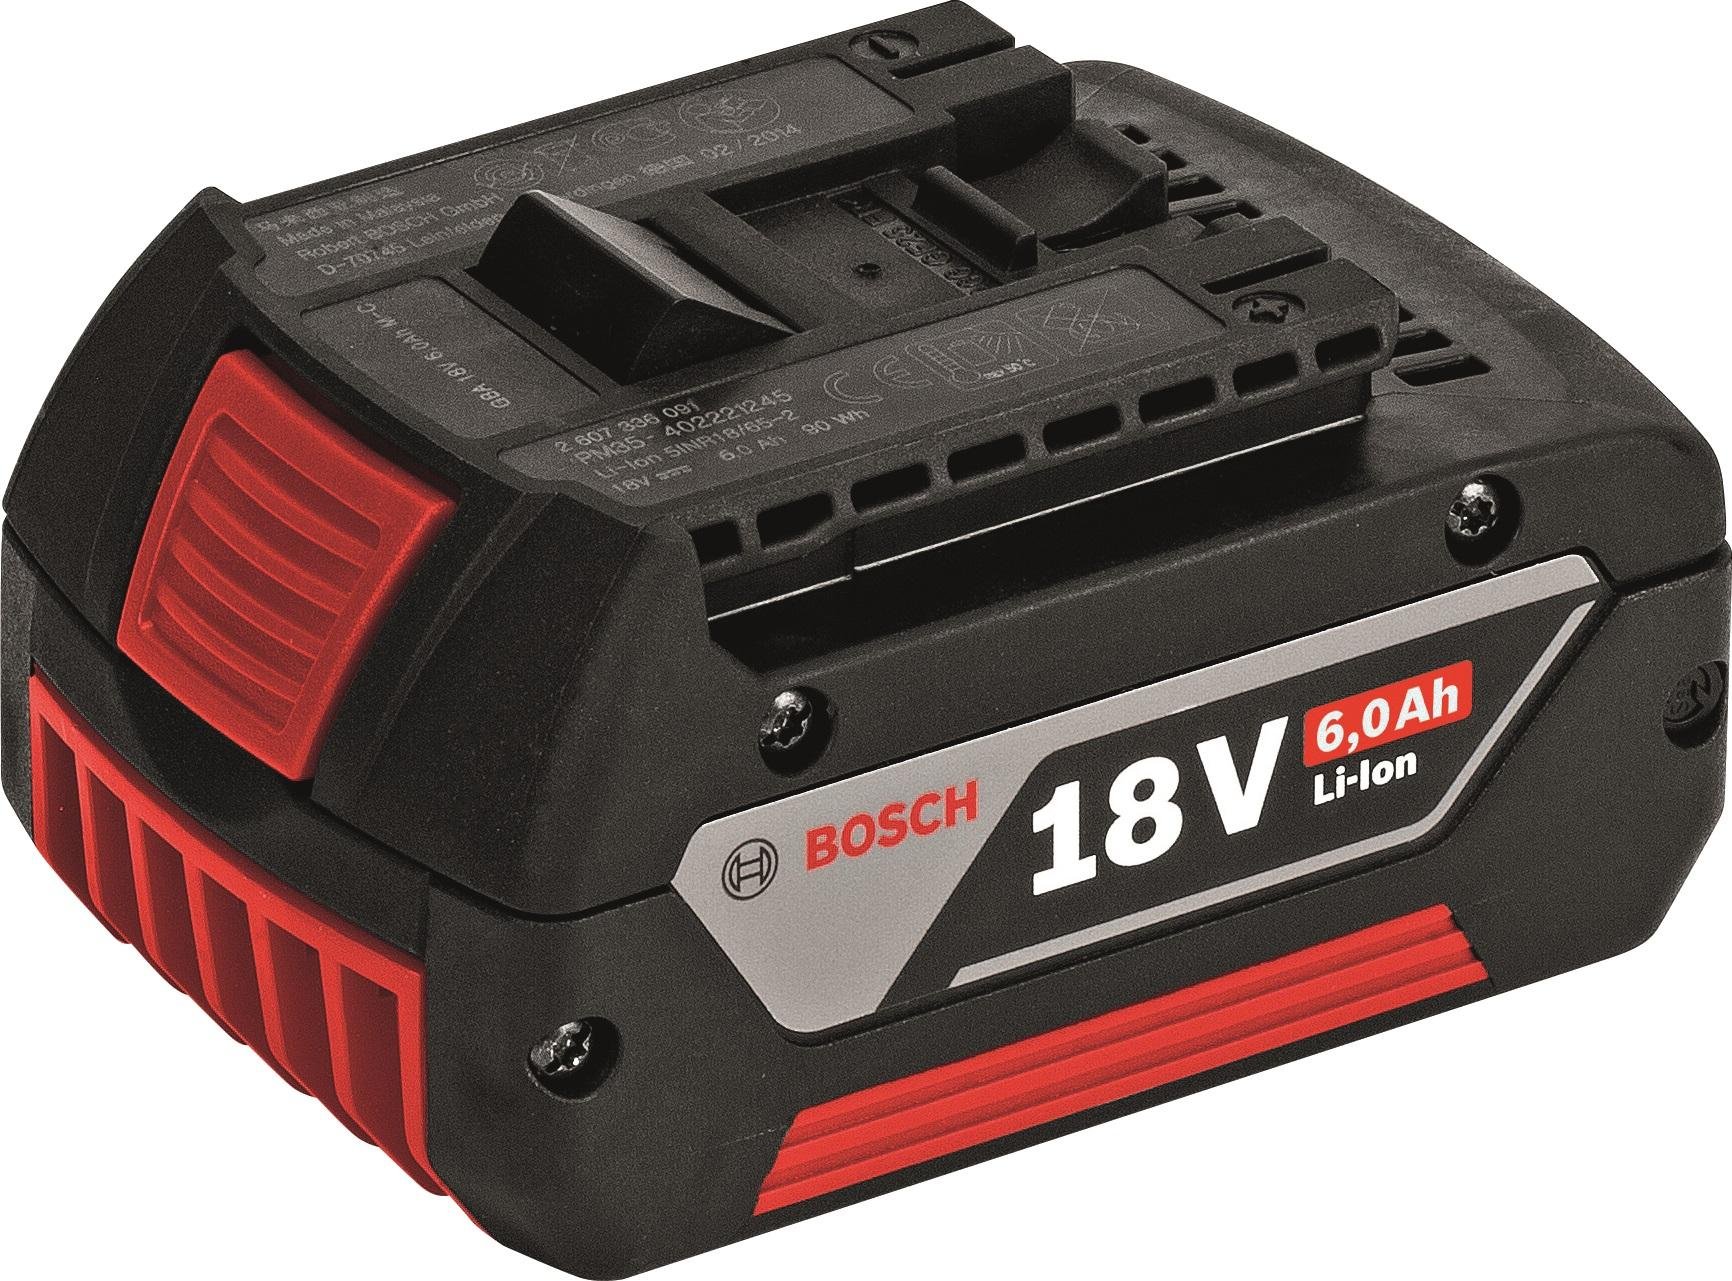 Автомобильный аккумулятор блоком. Аккумулятор Bosch GBA 18 V 6,0 А*Ч M-C. Аккумуляторная батарея бош 18 вольт. Аккумулятор для Bosch GBA 18v 4.0 Ah. Аккумулятор бош 18 вольт.